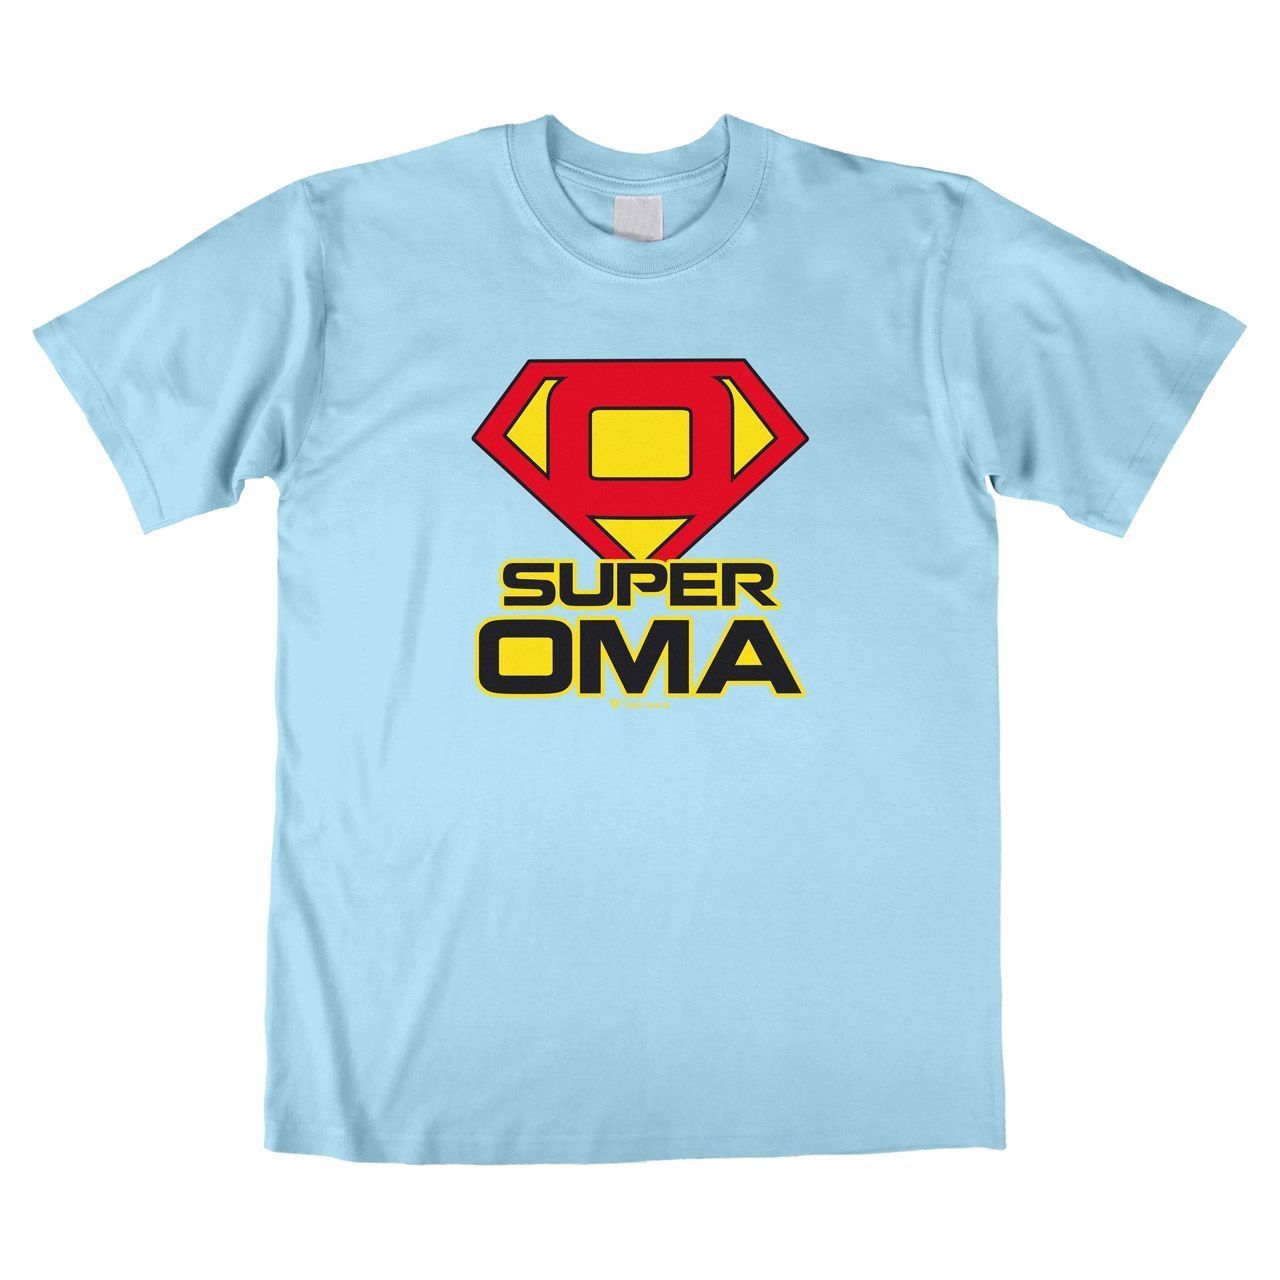 Super Oma Unisex T-Shirt hellblau Medium